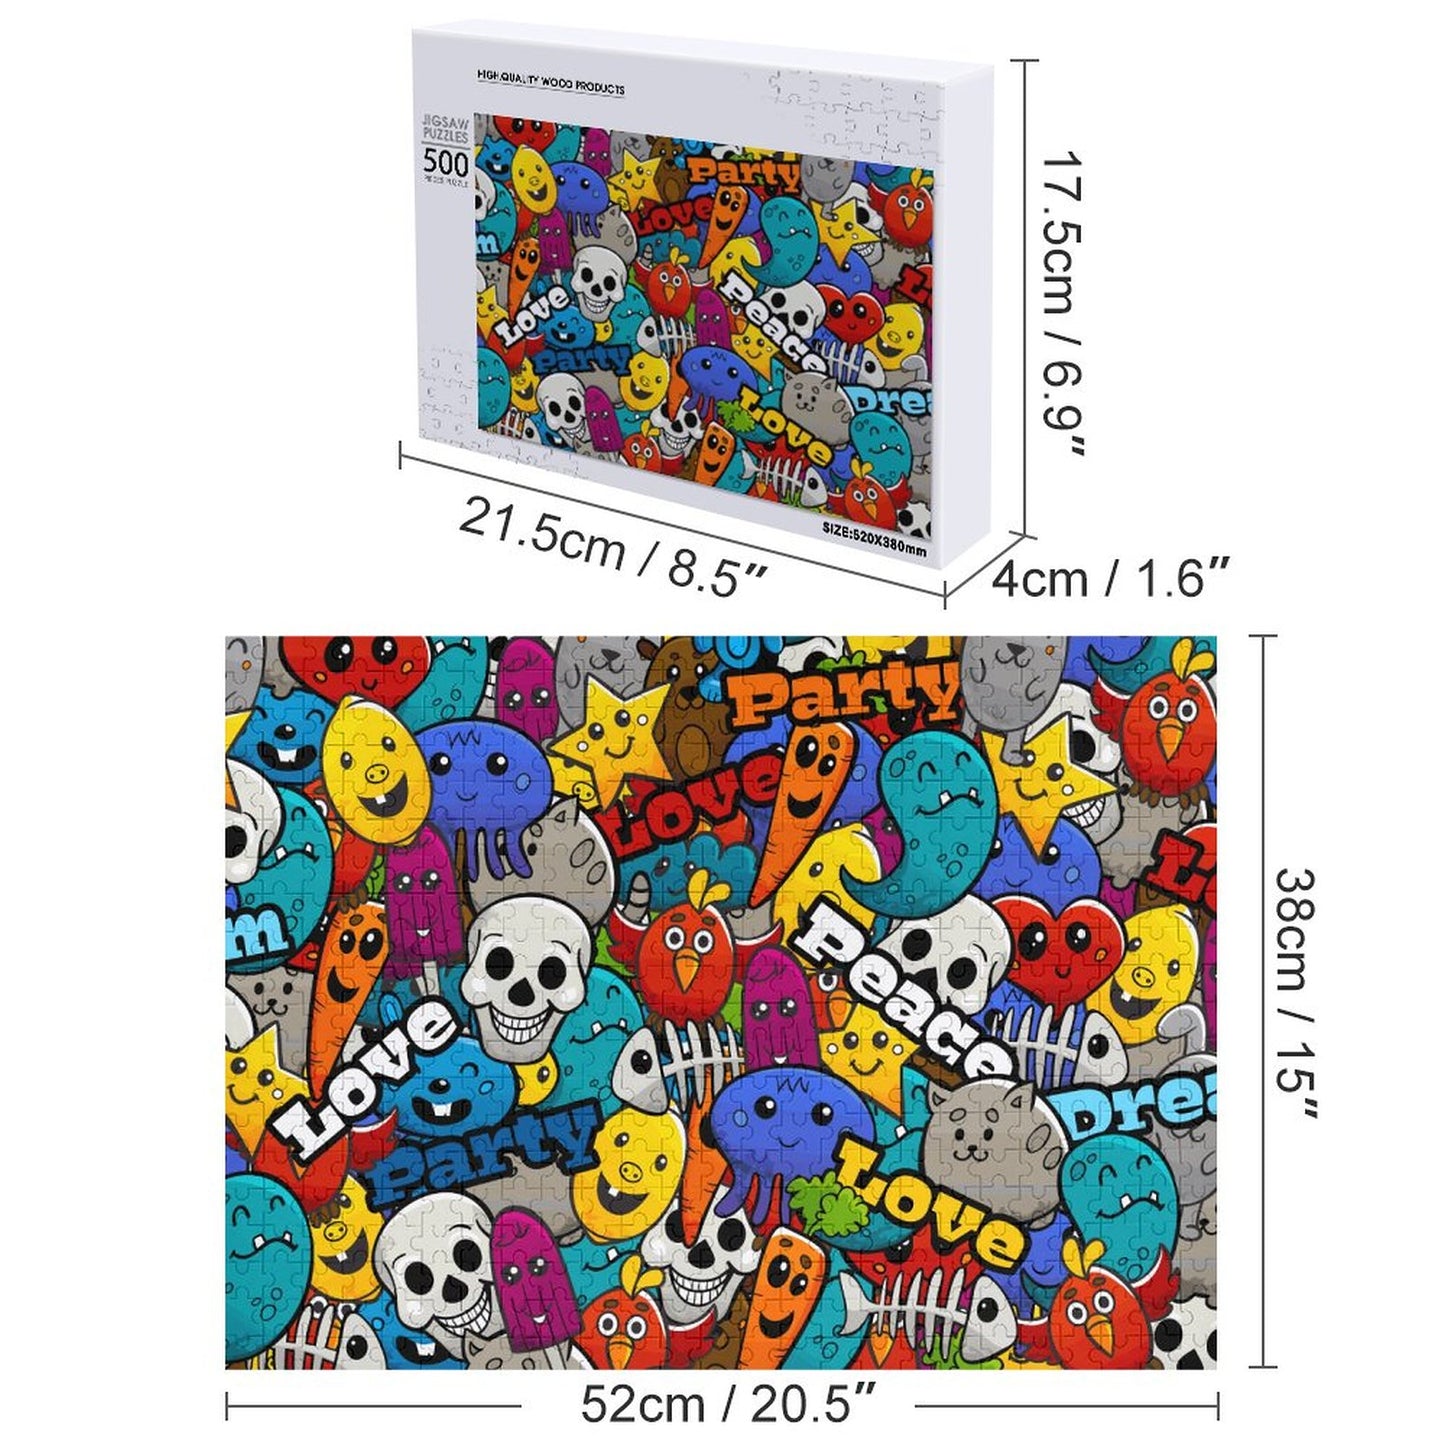 Online Custom Wooden Picture Puzzle Party Skeletons Carrots Cartoons 300PCS 500PCS 1000PCS